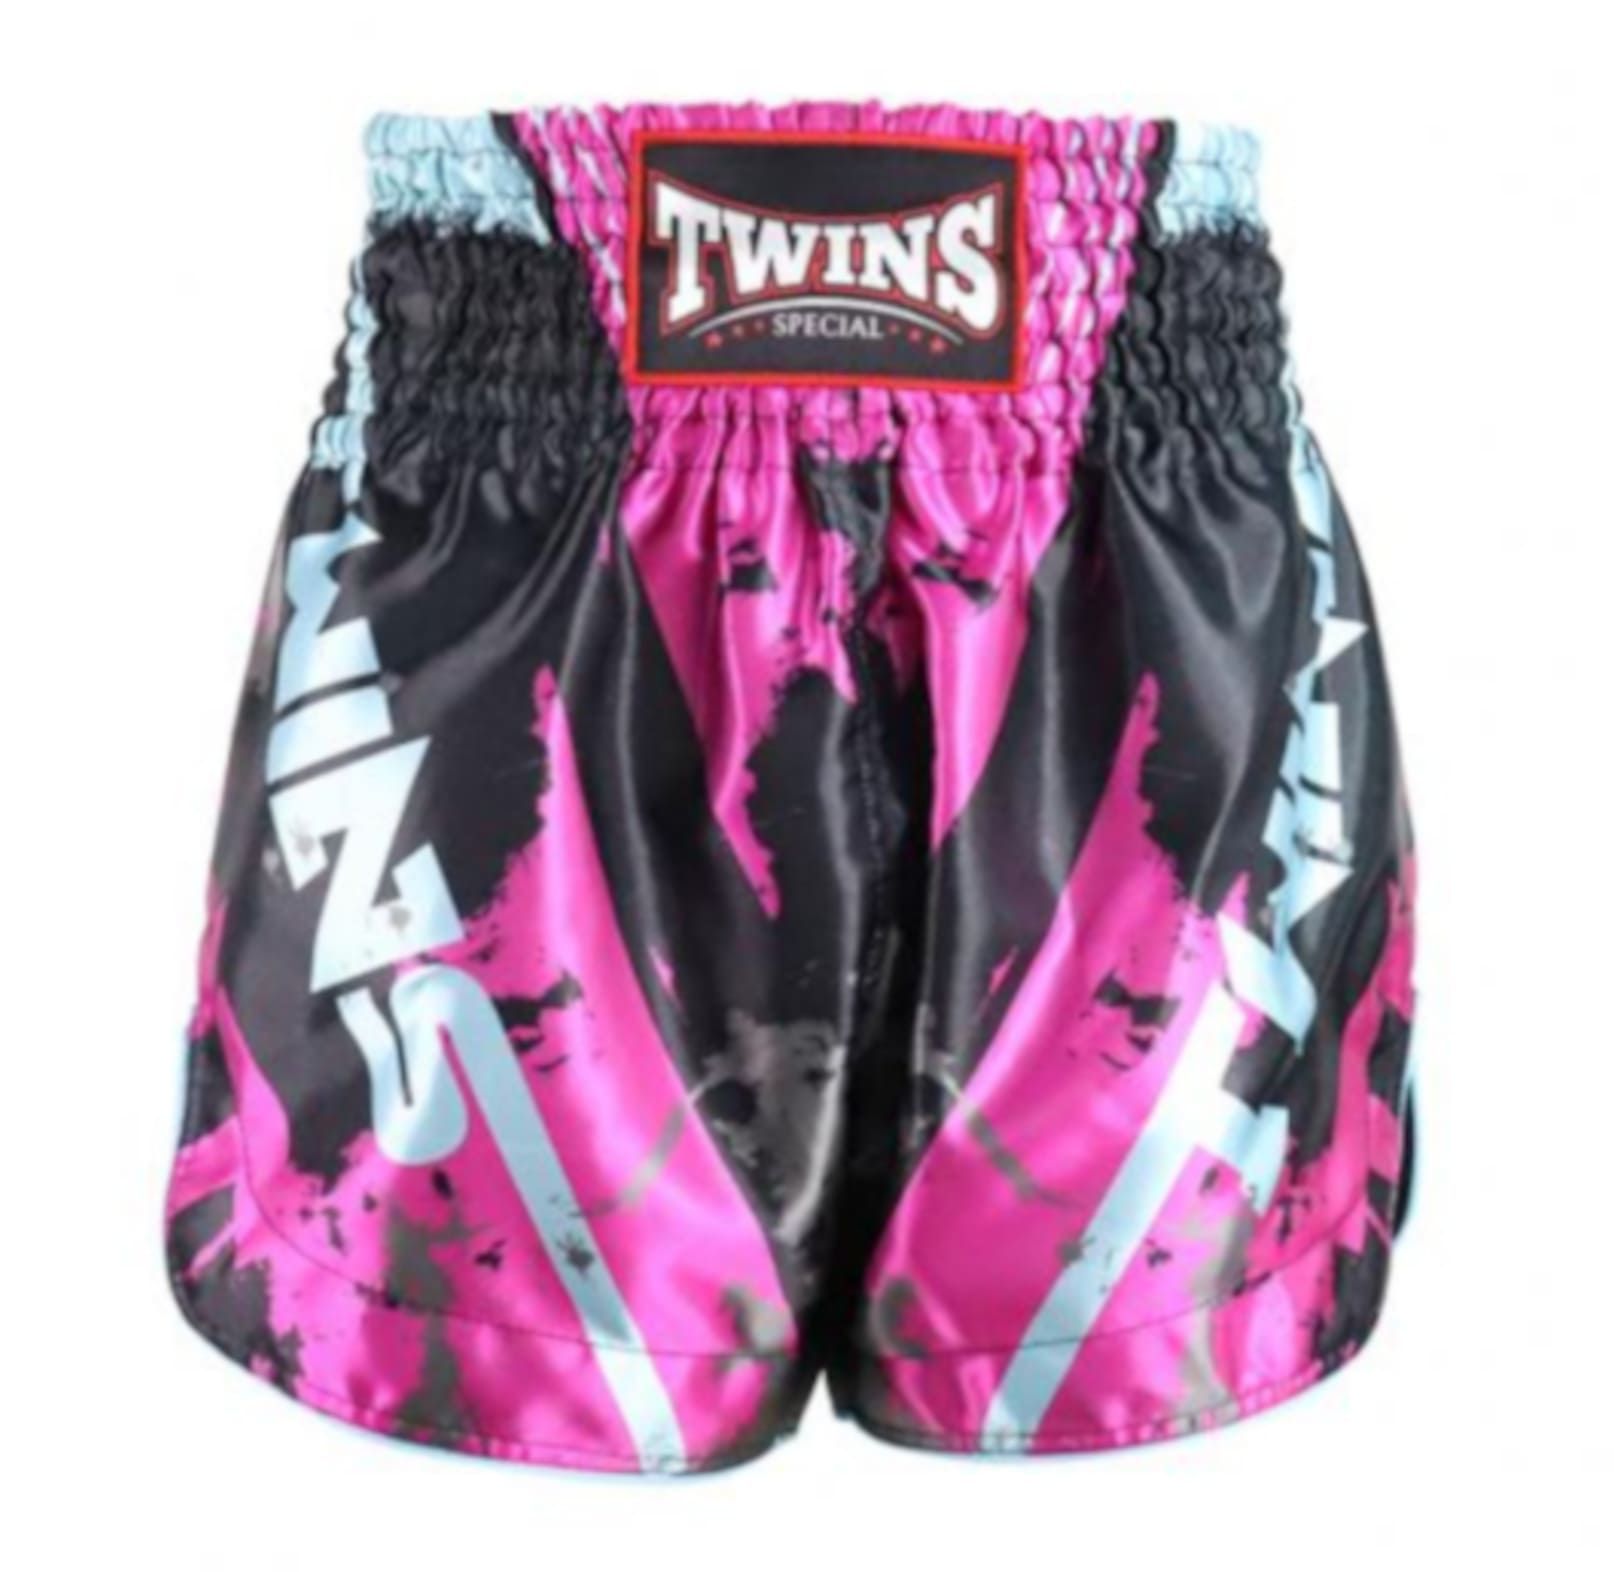 Twins Special Spodenki Muay Thai Candy Białe/Różowe XL